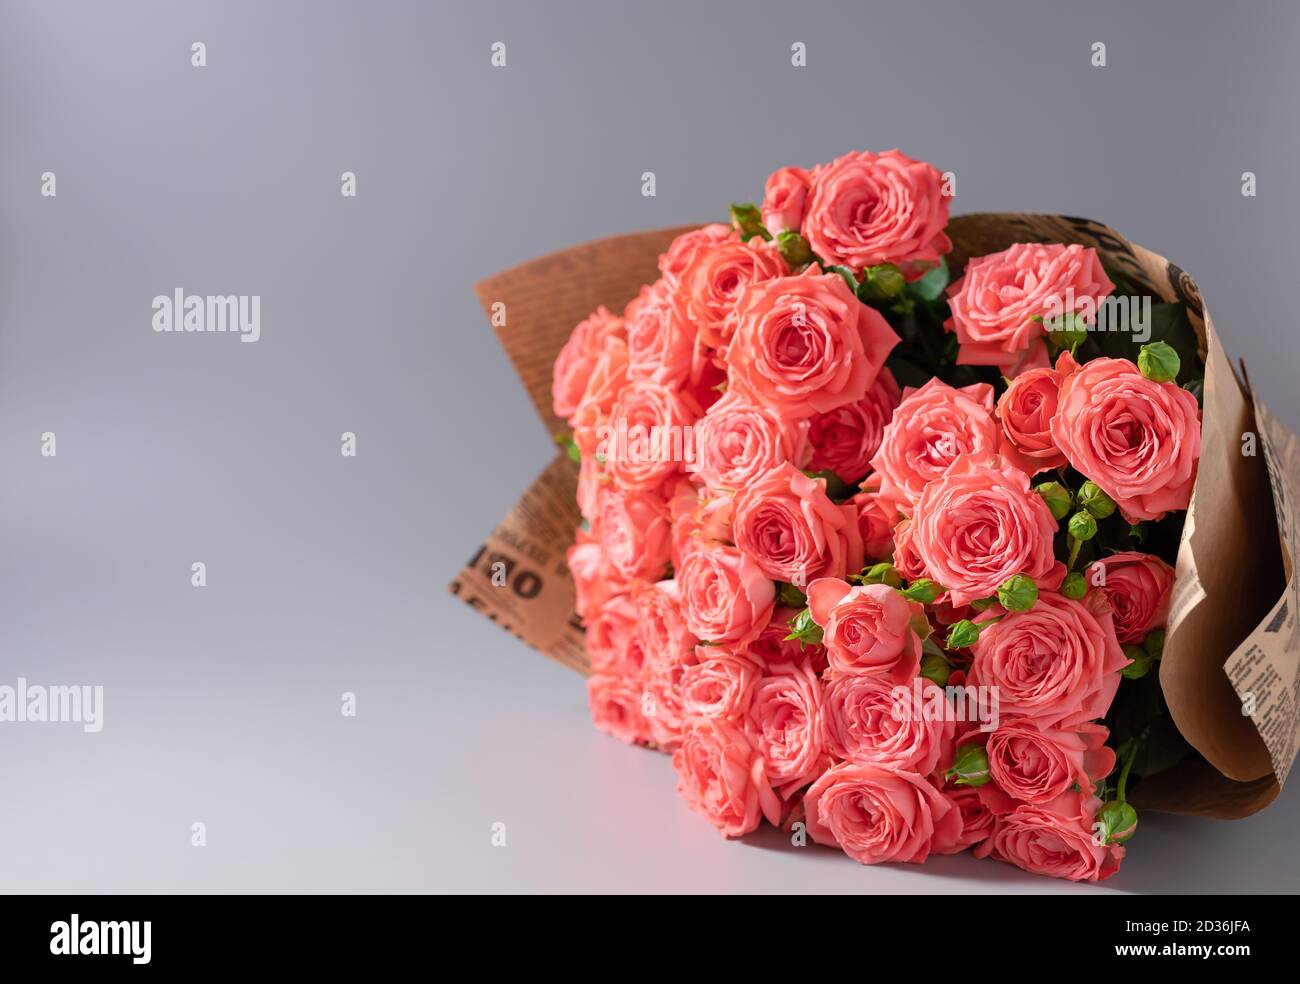 beau bouquet de roses roses enveloppées dans du papier artisanal Banque D'Images